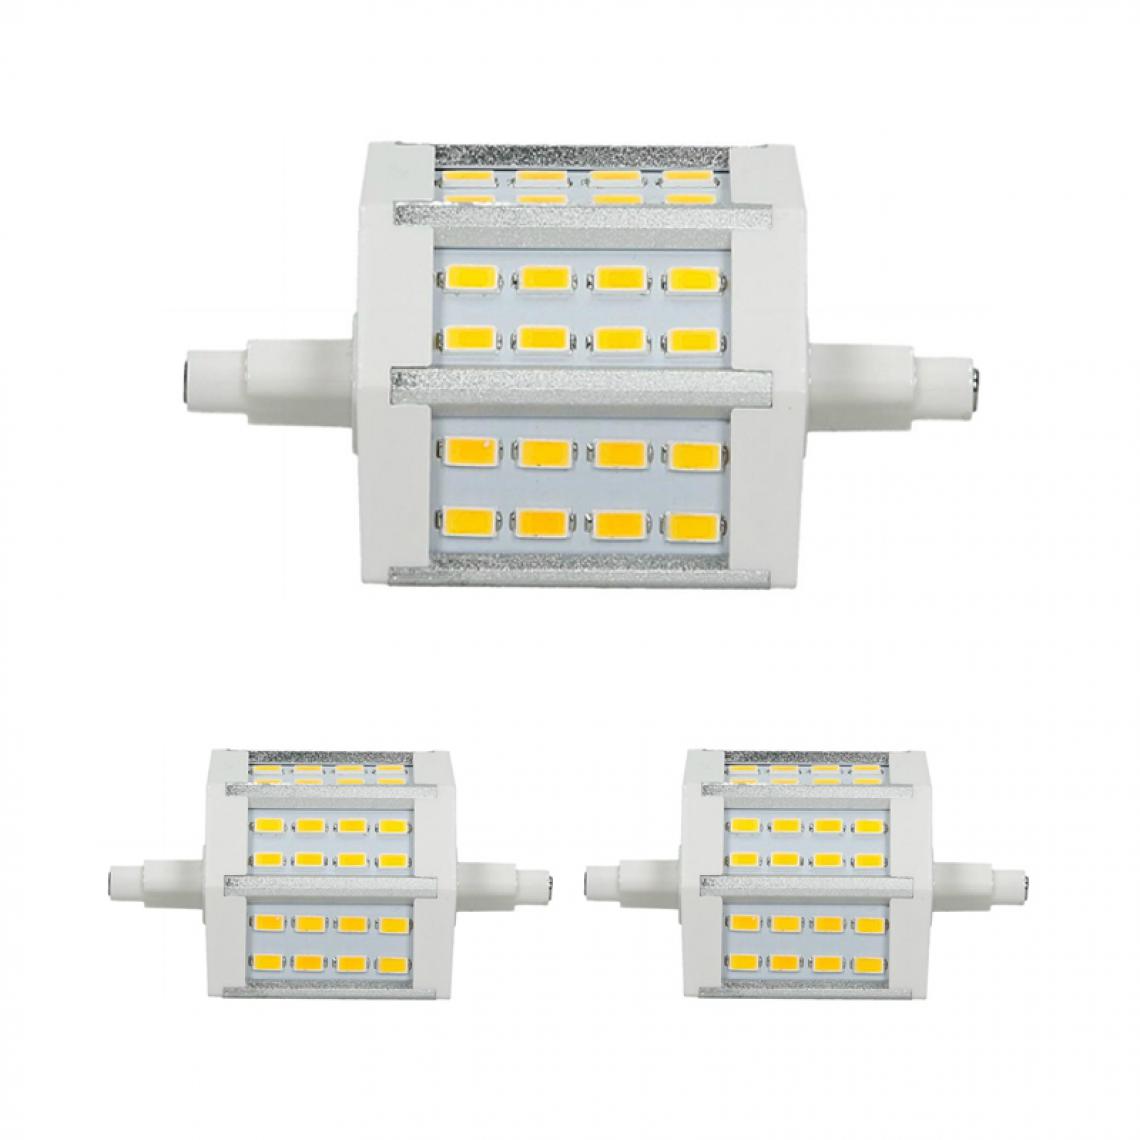 Ecd Germany - ECD Germany 2 x R7S Ampoule LED 5W 78mm 360 lumens SMD5730 AC 220-240 angle de faisceau de 180 degrés remplace Ampoule halogène 35W non réglable Blanc Chaud - Tubes et néons